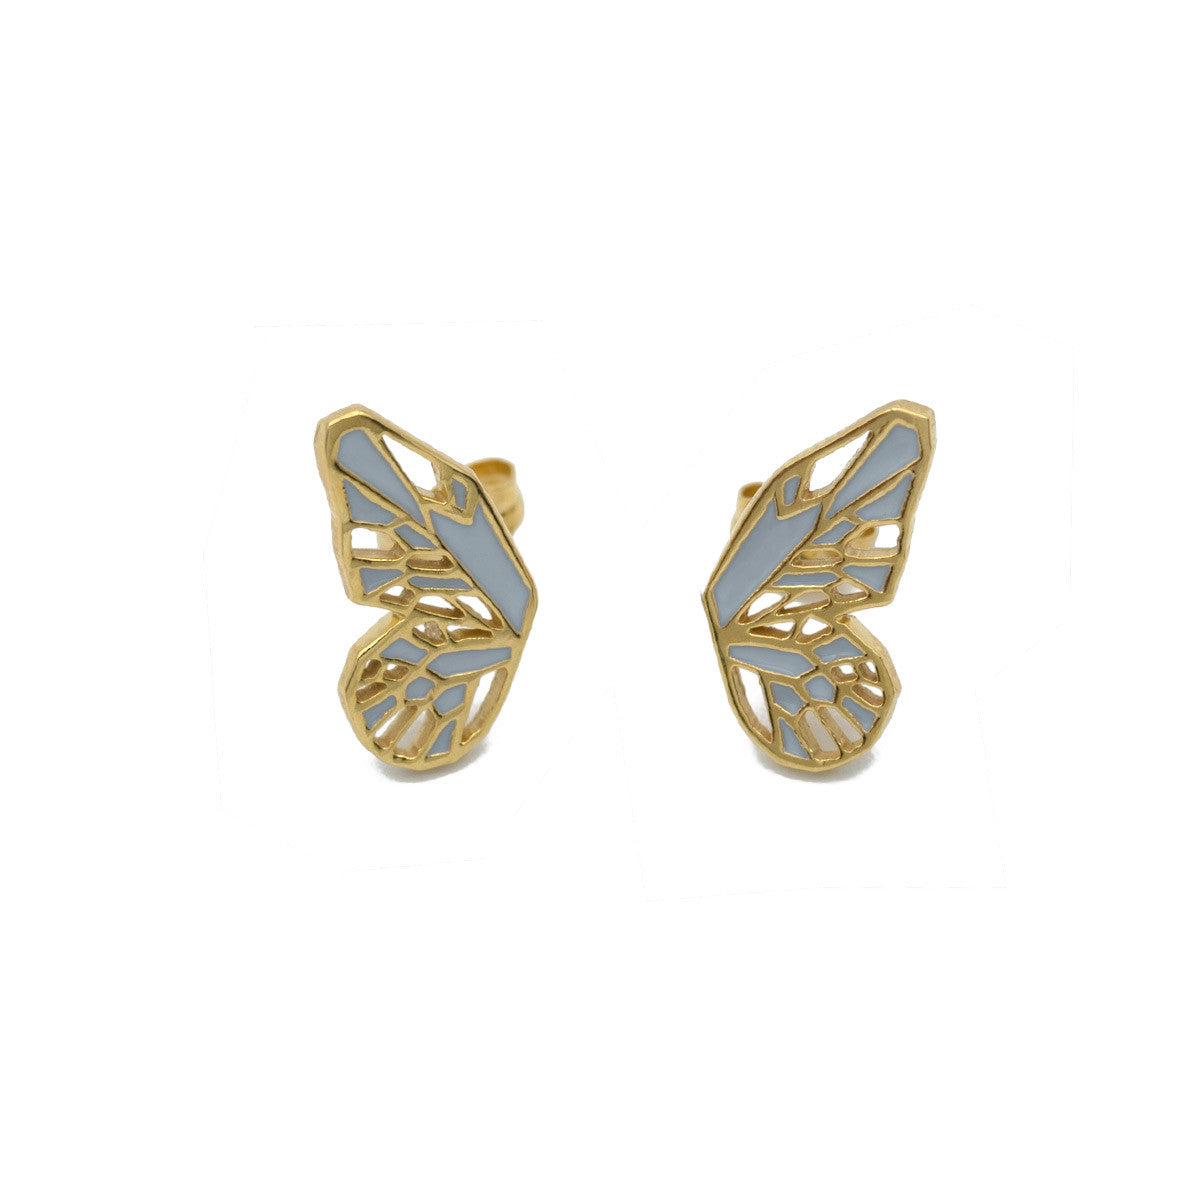 Butterfly wings earring studs in gold and grey enamel